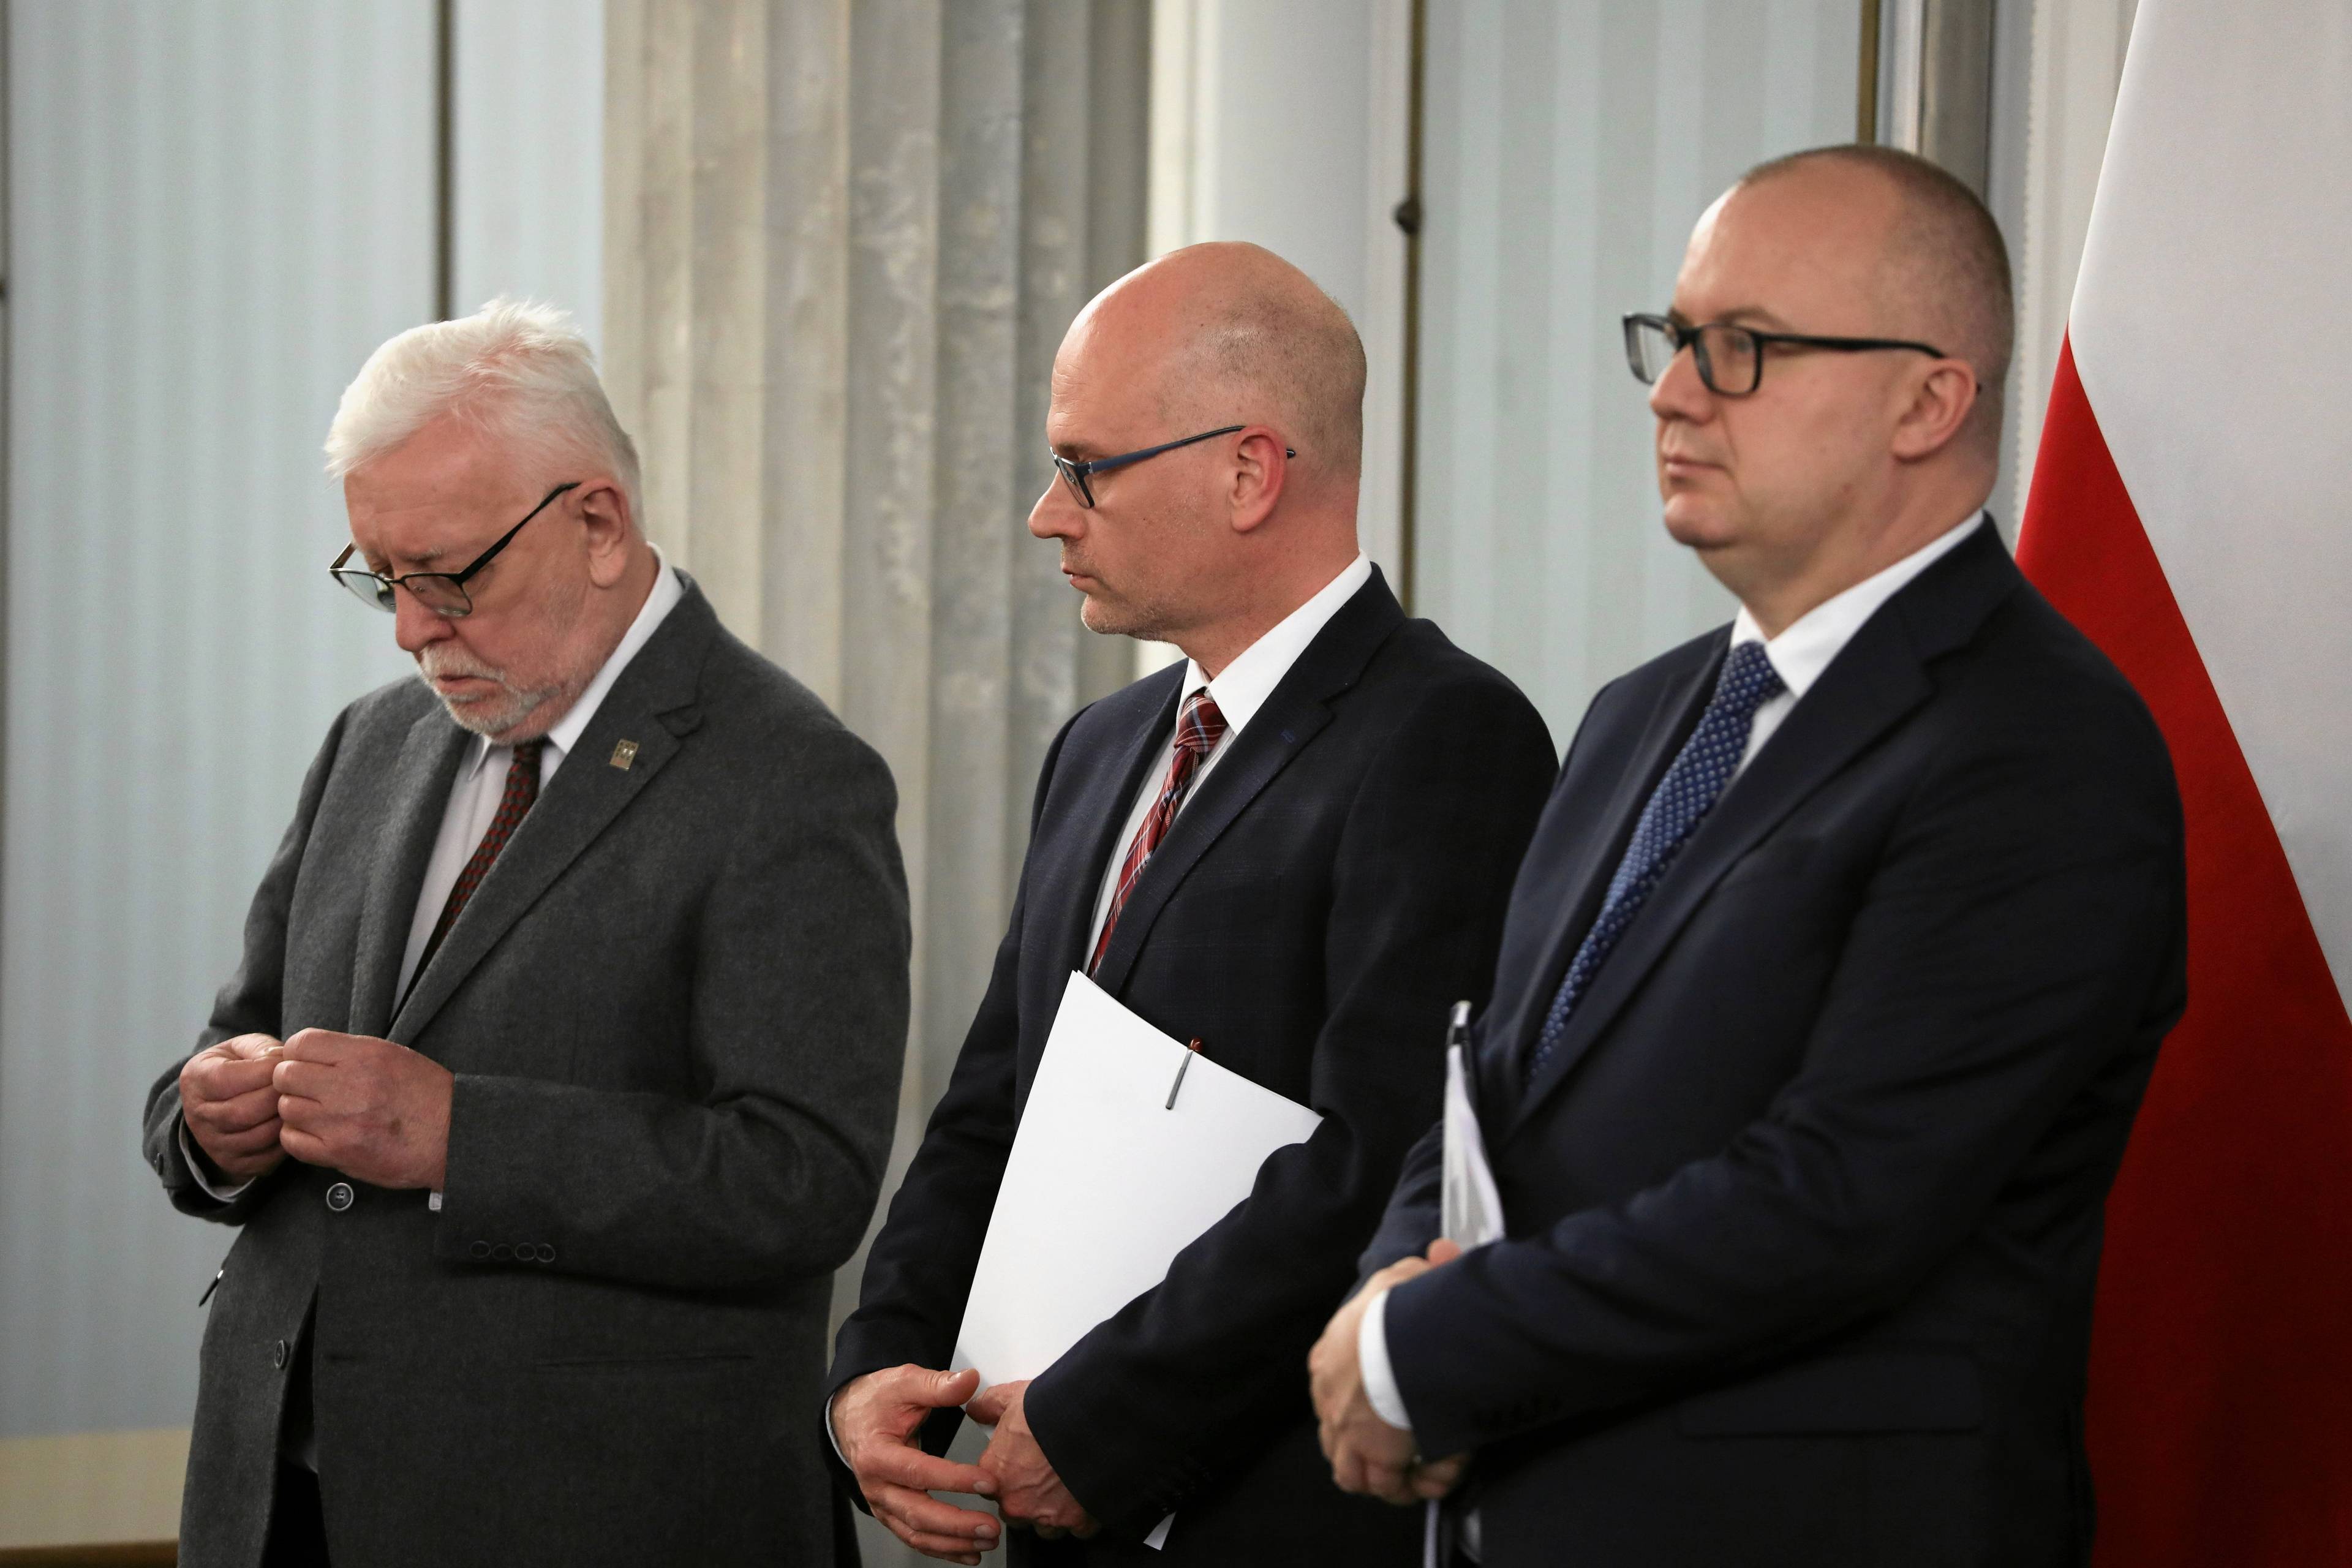 Trzech mężczyzn z krótkimi włosami w garniturach stoi podczas konferencji prasowej w Sejmie